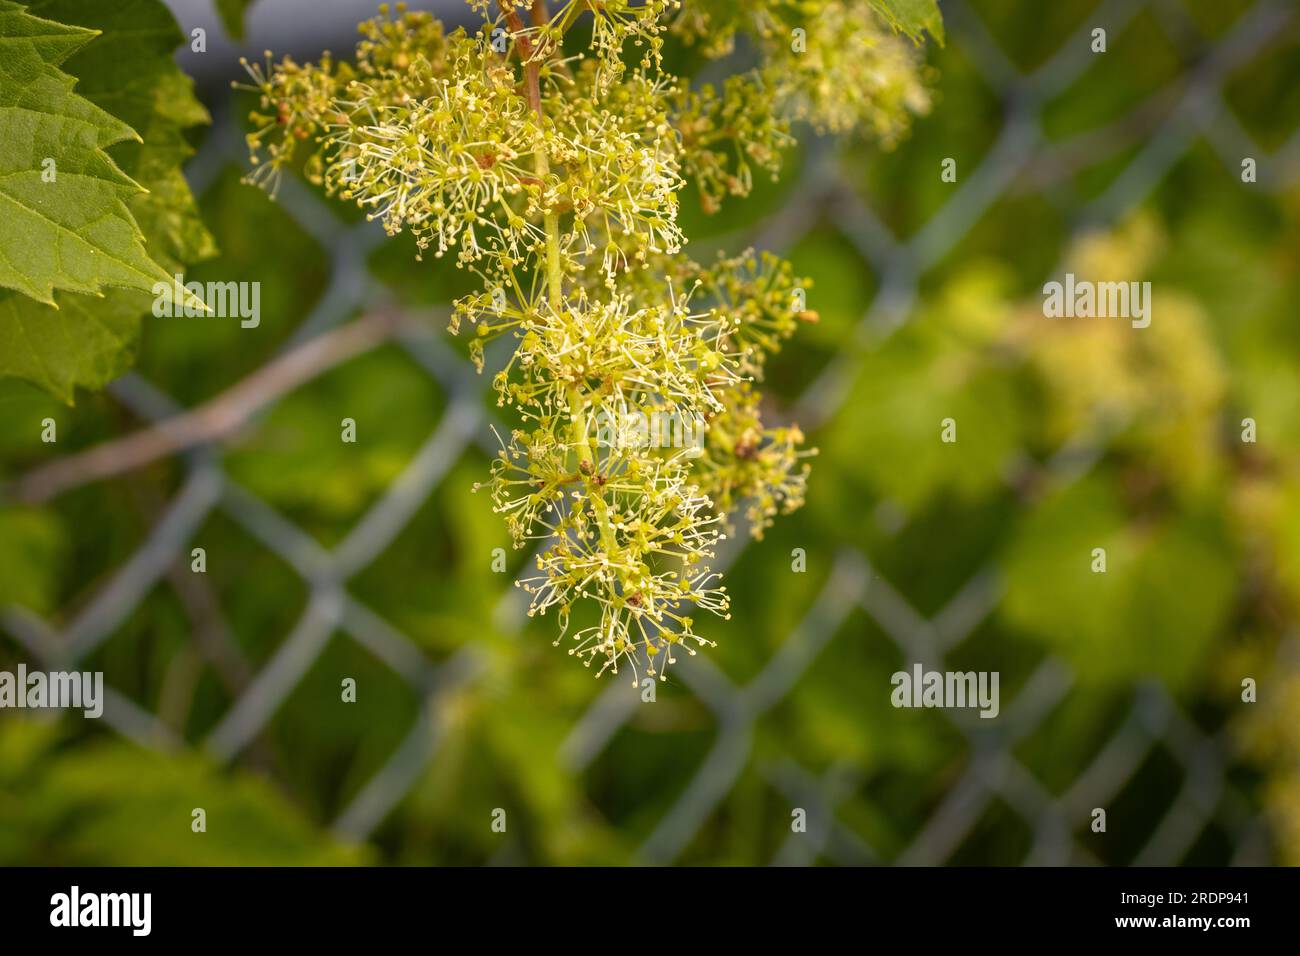 Grünblättrige Pflanze mit gelben Blüten - Kettengliederzaun verschwommener Hintergrund Stockfoto